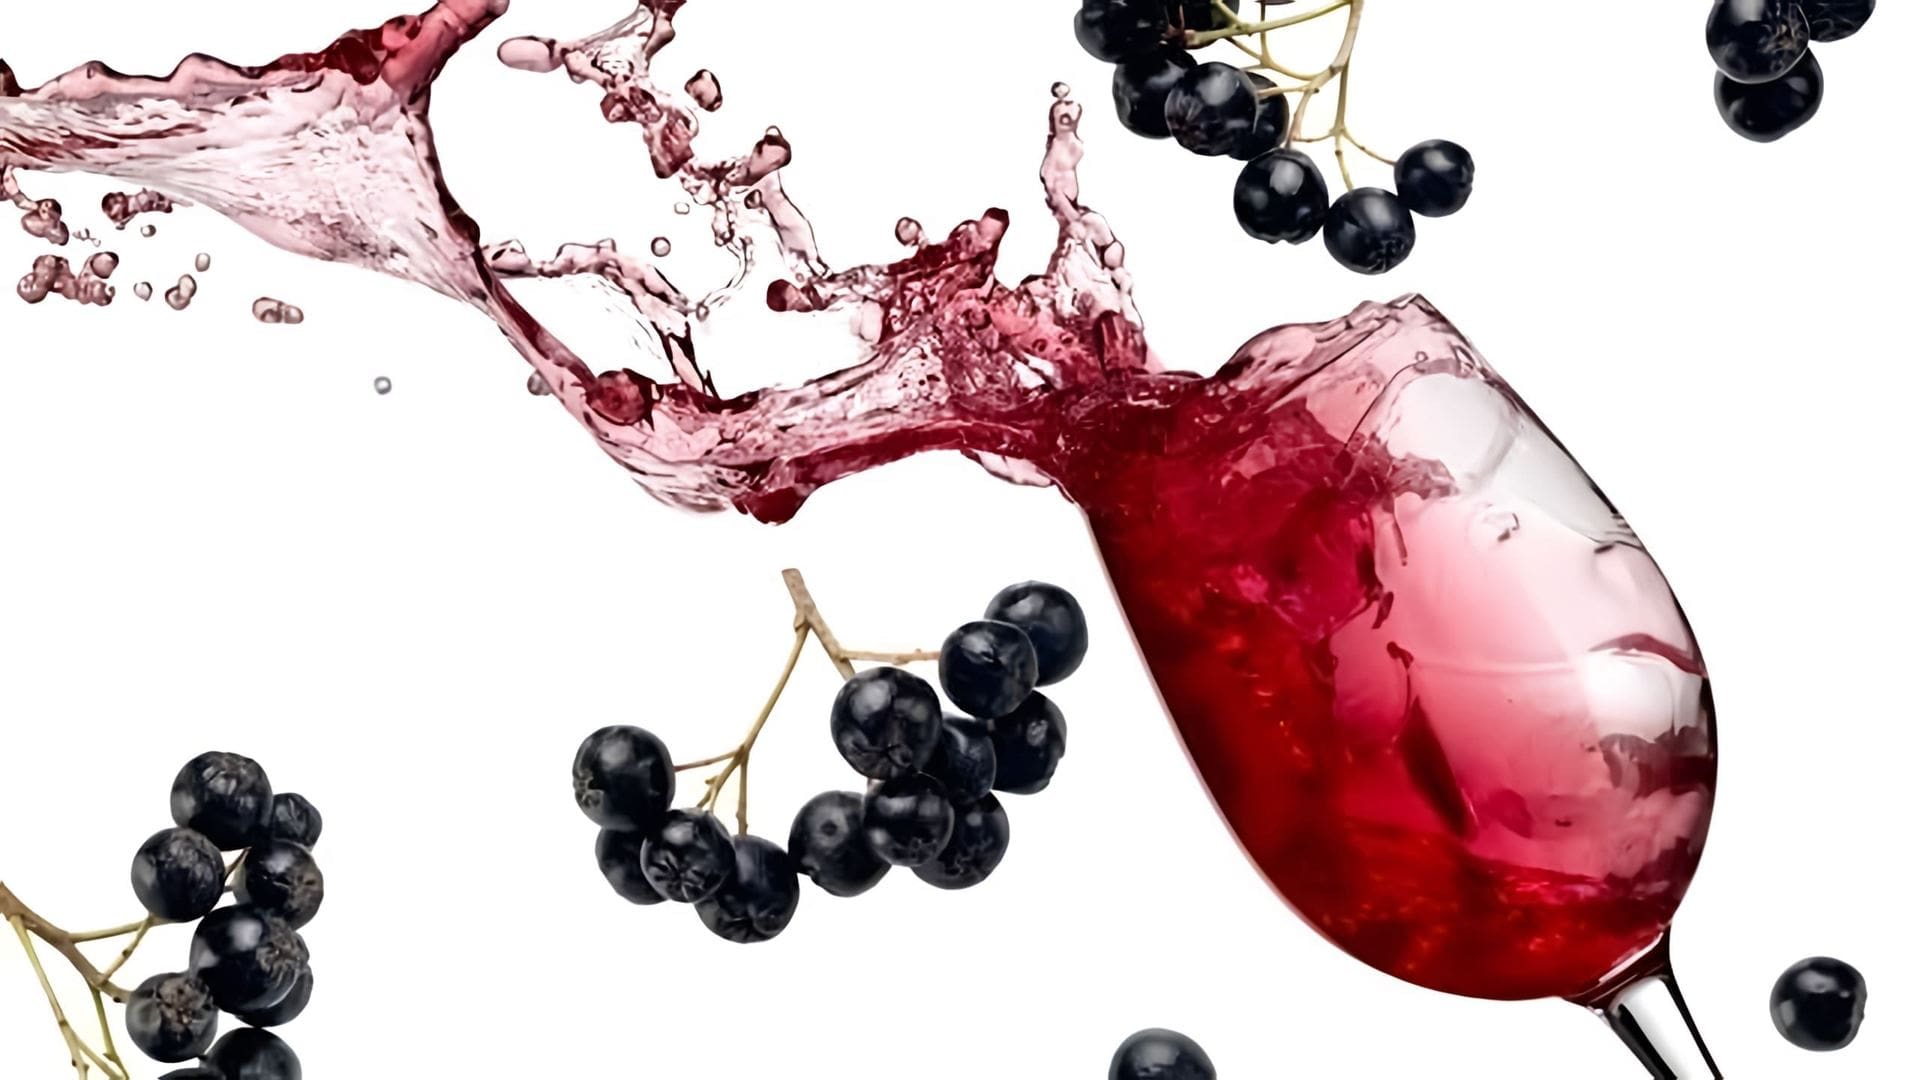 Делаем домашнее вино из ягод черноплодной рябины и смородины - чёрной и белой... 